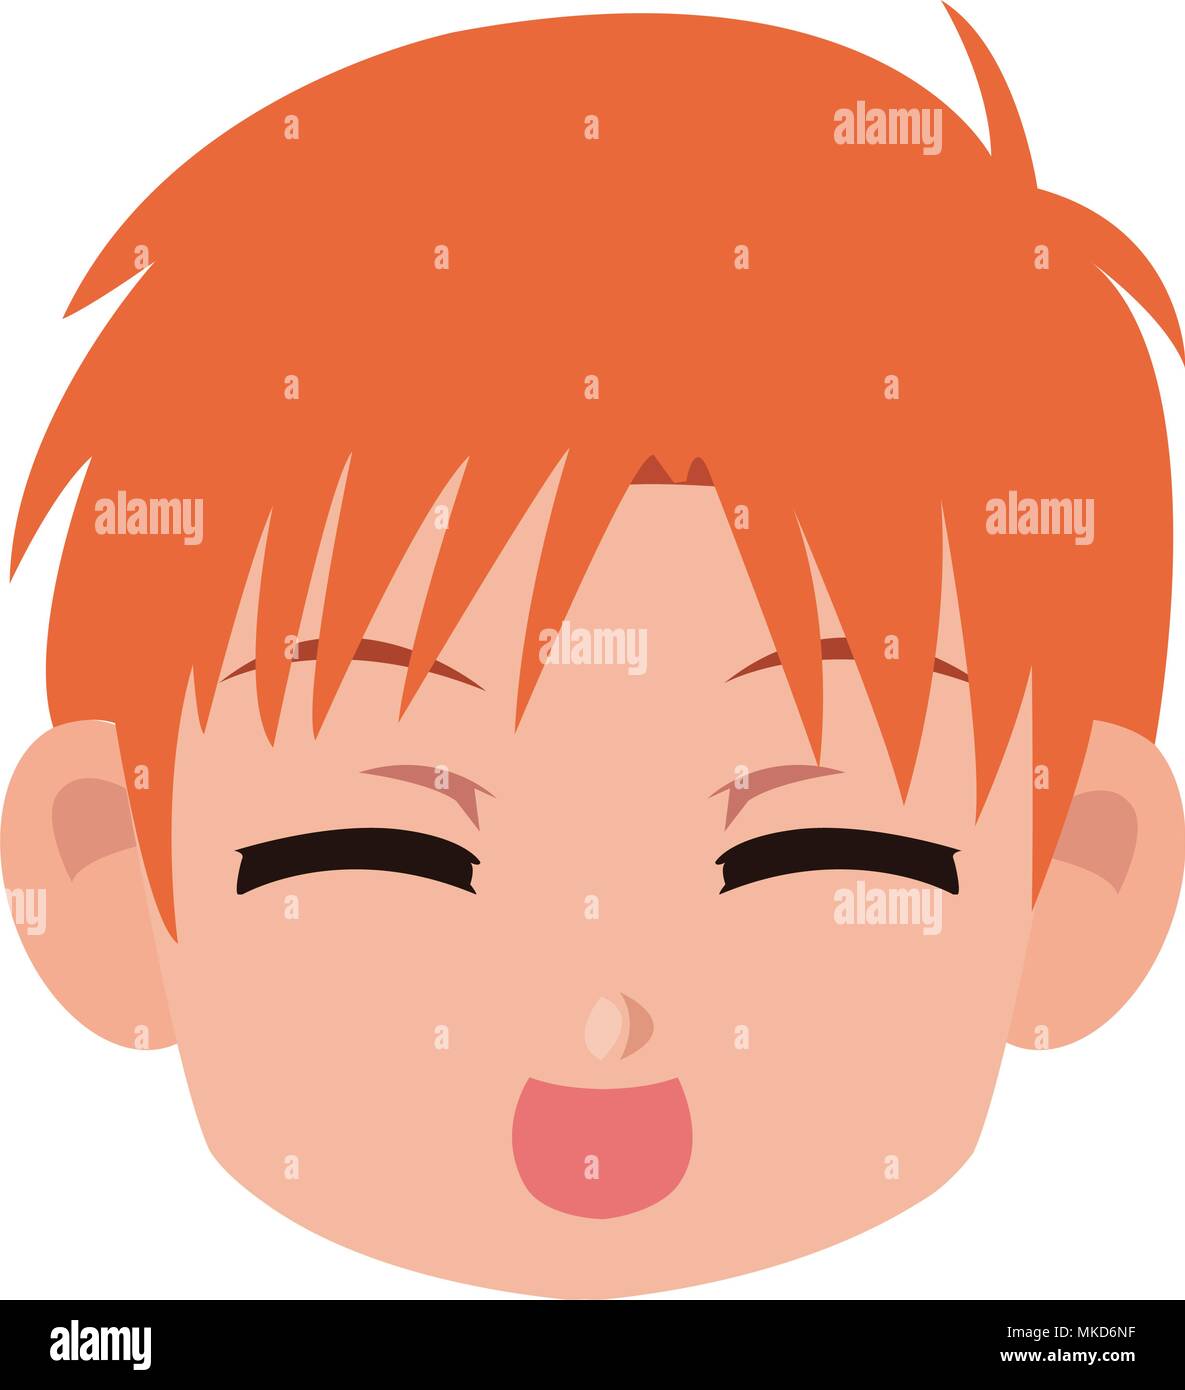 Manga boy face cartoon Stock Vector Image & Art - Alamy